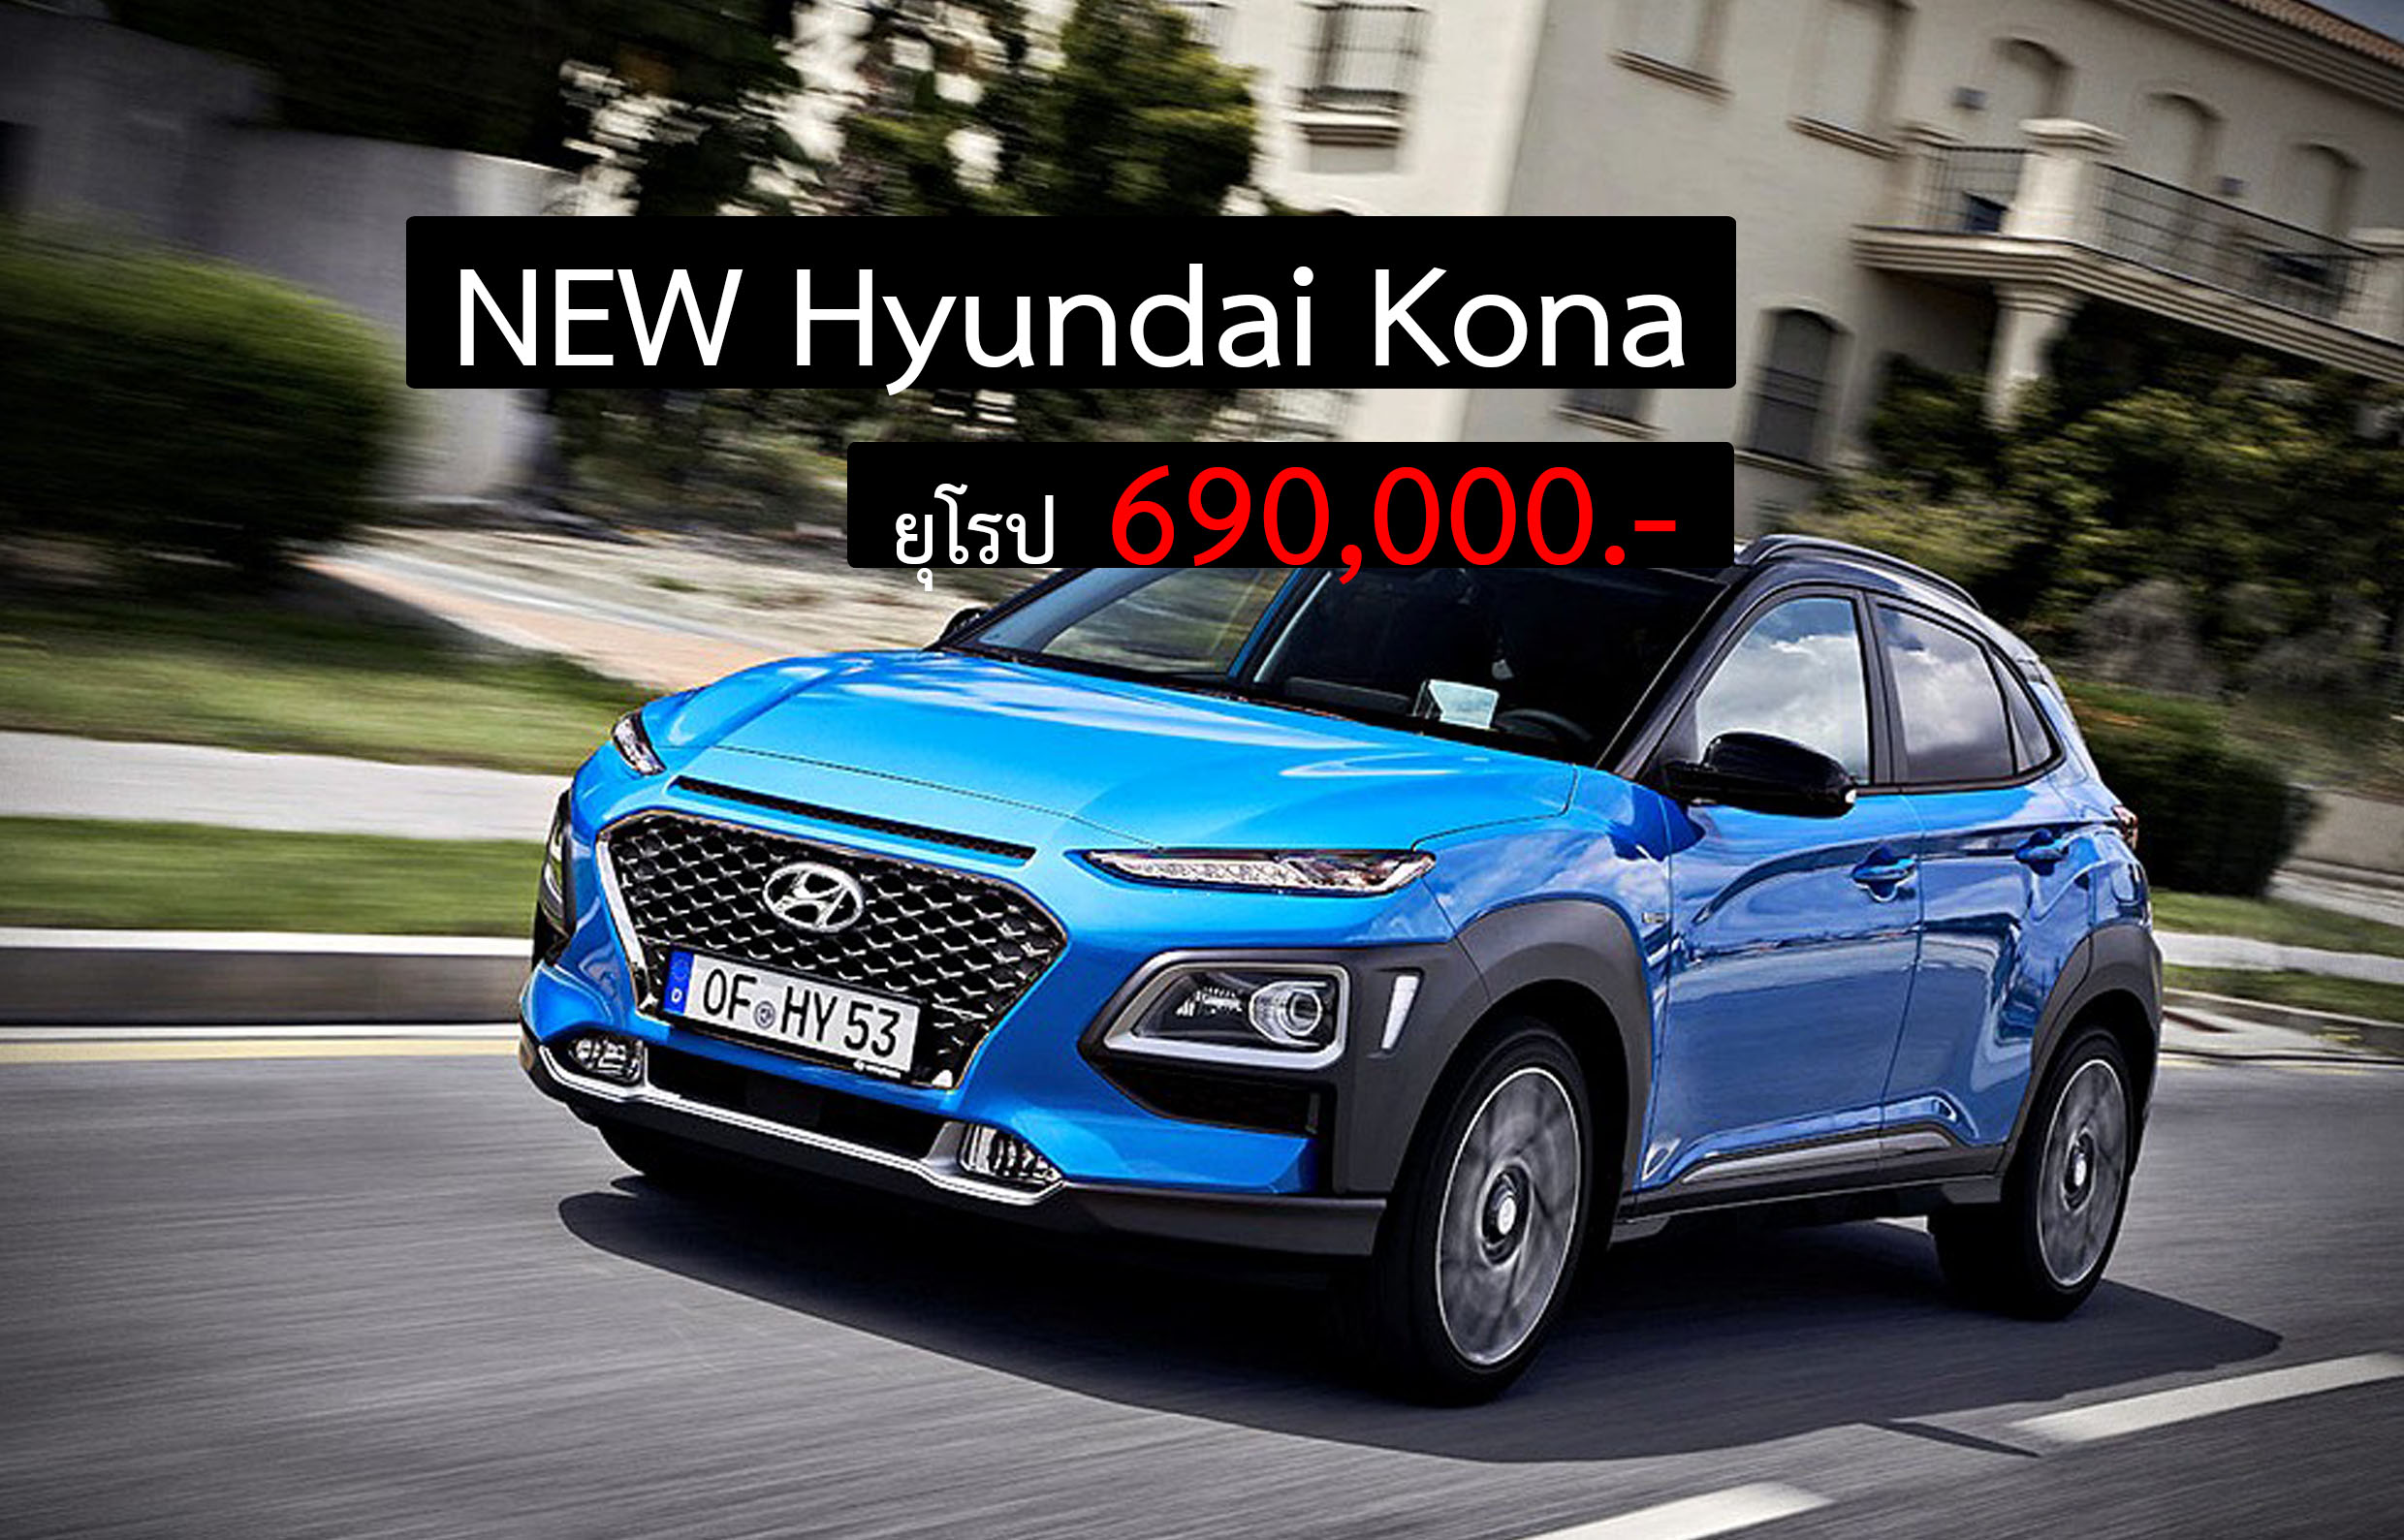 NEW Hyundai Kona 2019 เคาะราคาจำหน่าย 690,000 บาทในยุโรป